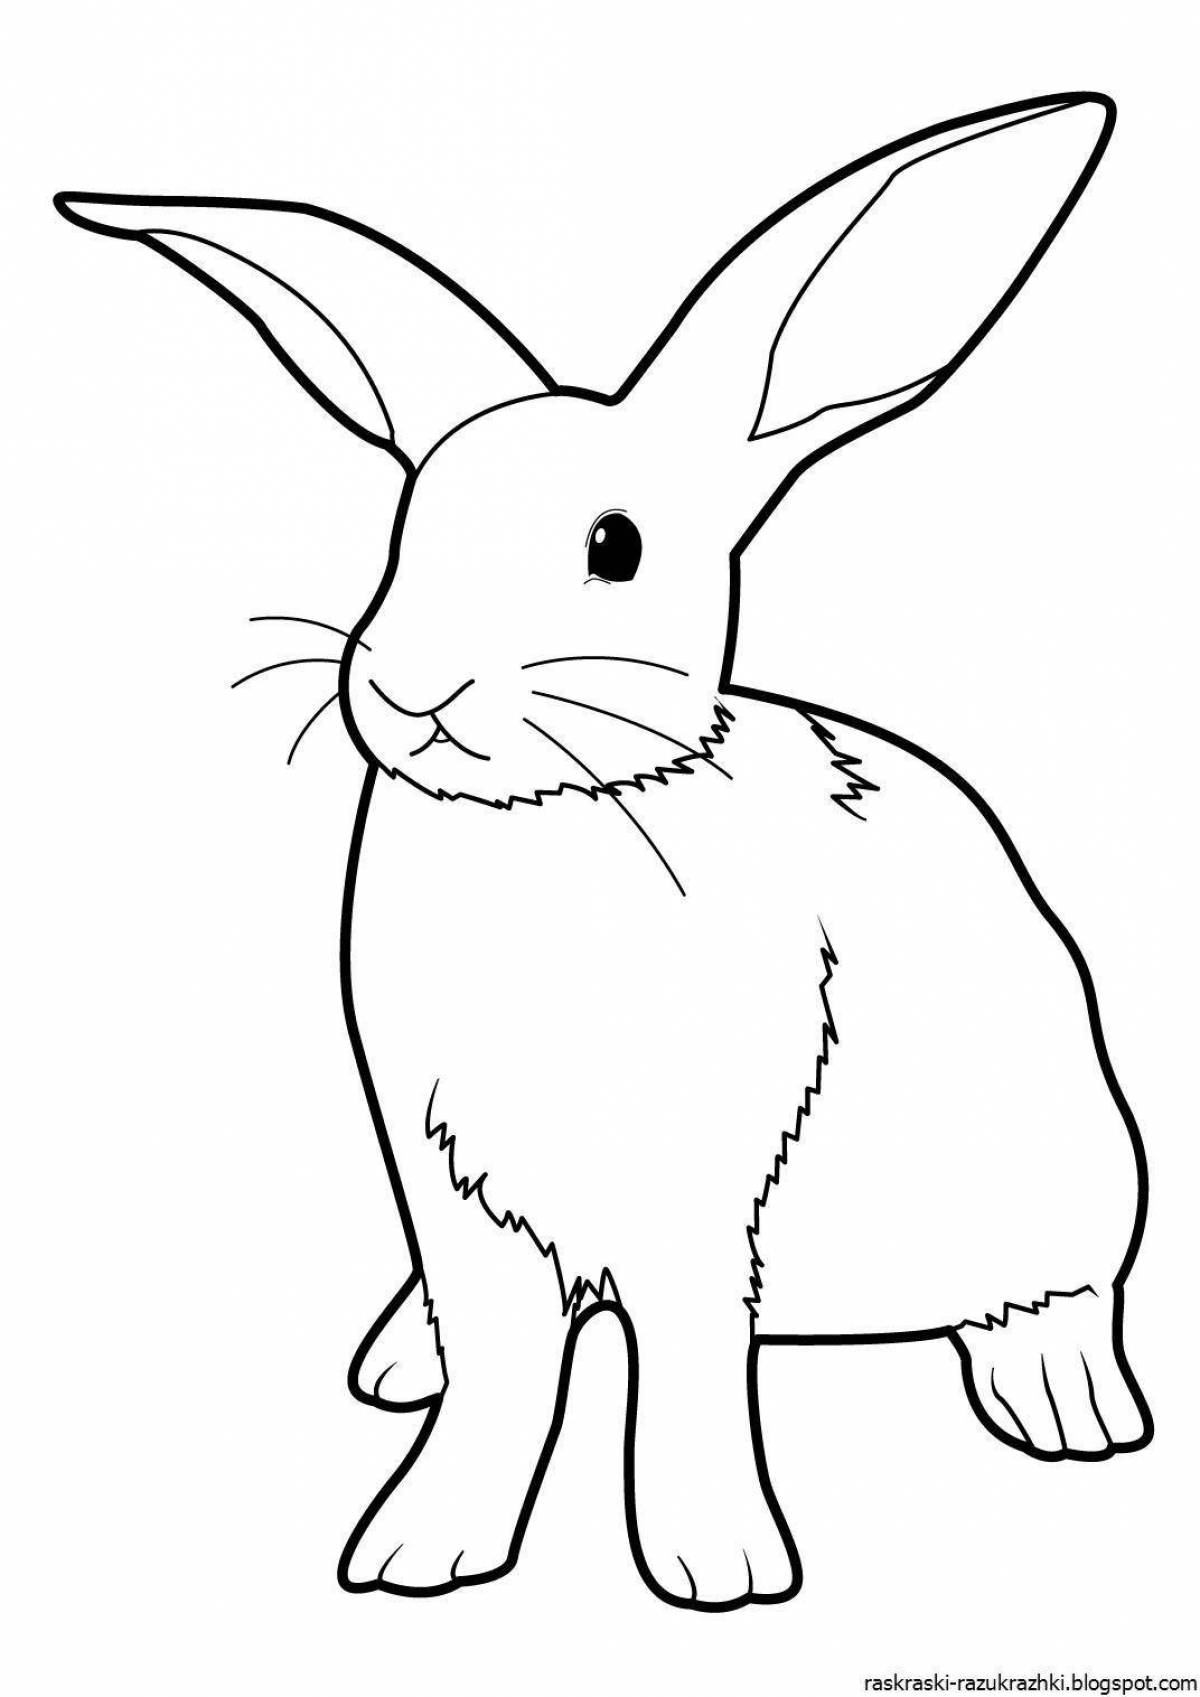 Увлекательная раскраска кролик для детей